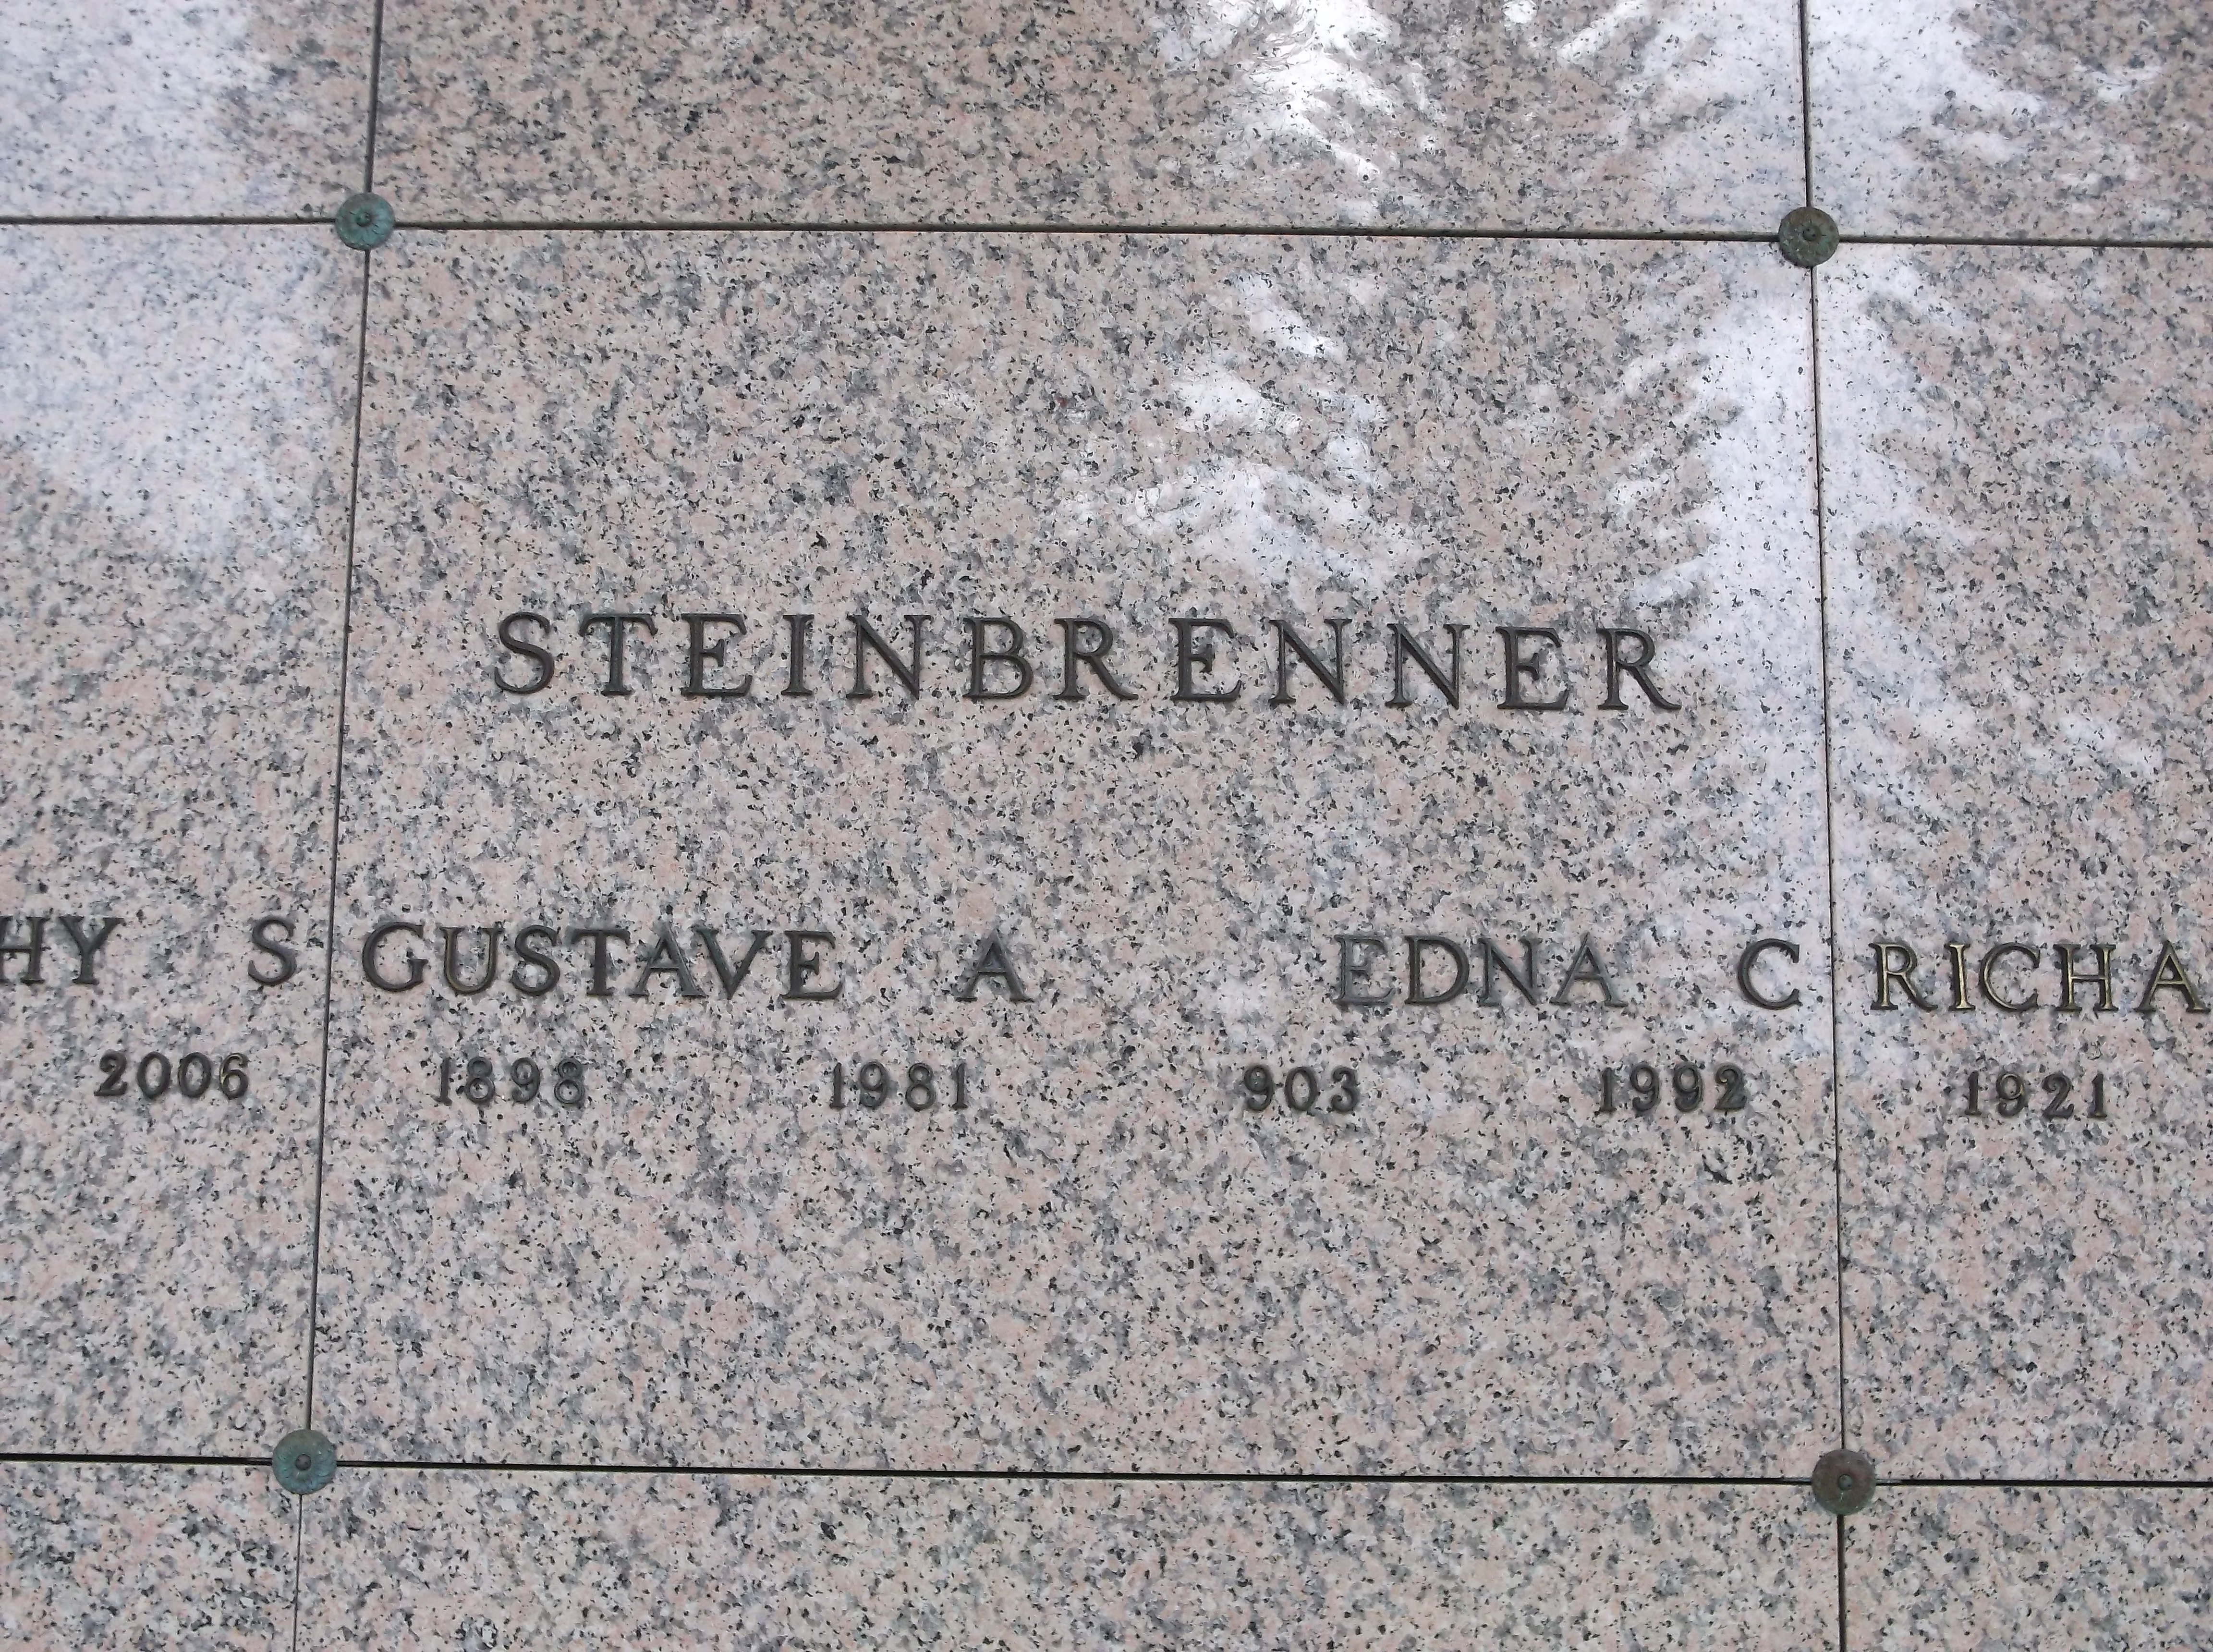 Edna C Steinbrenner